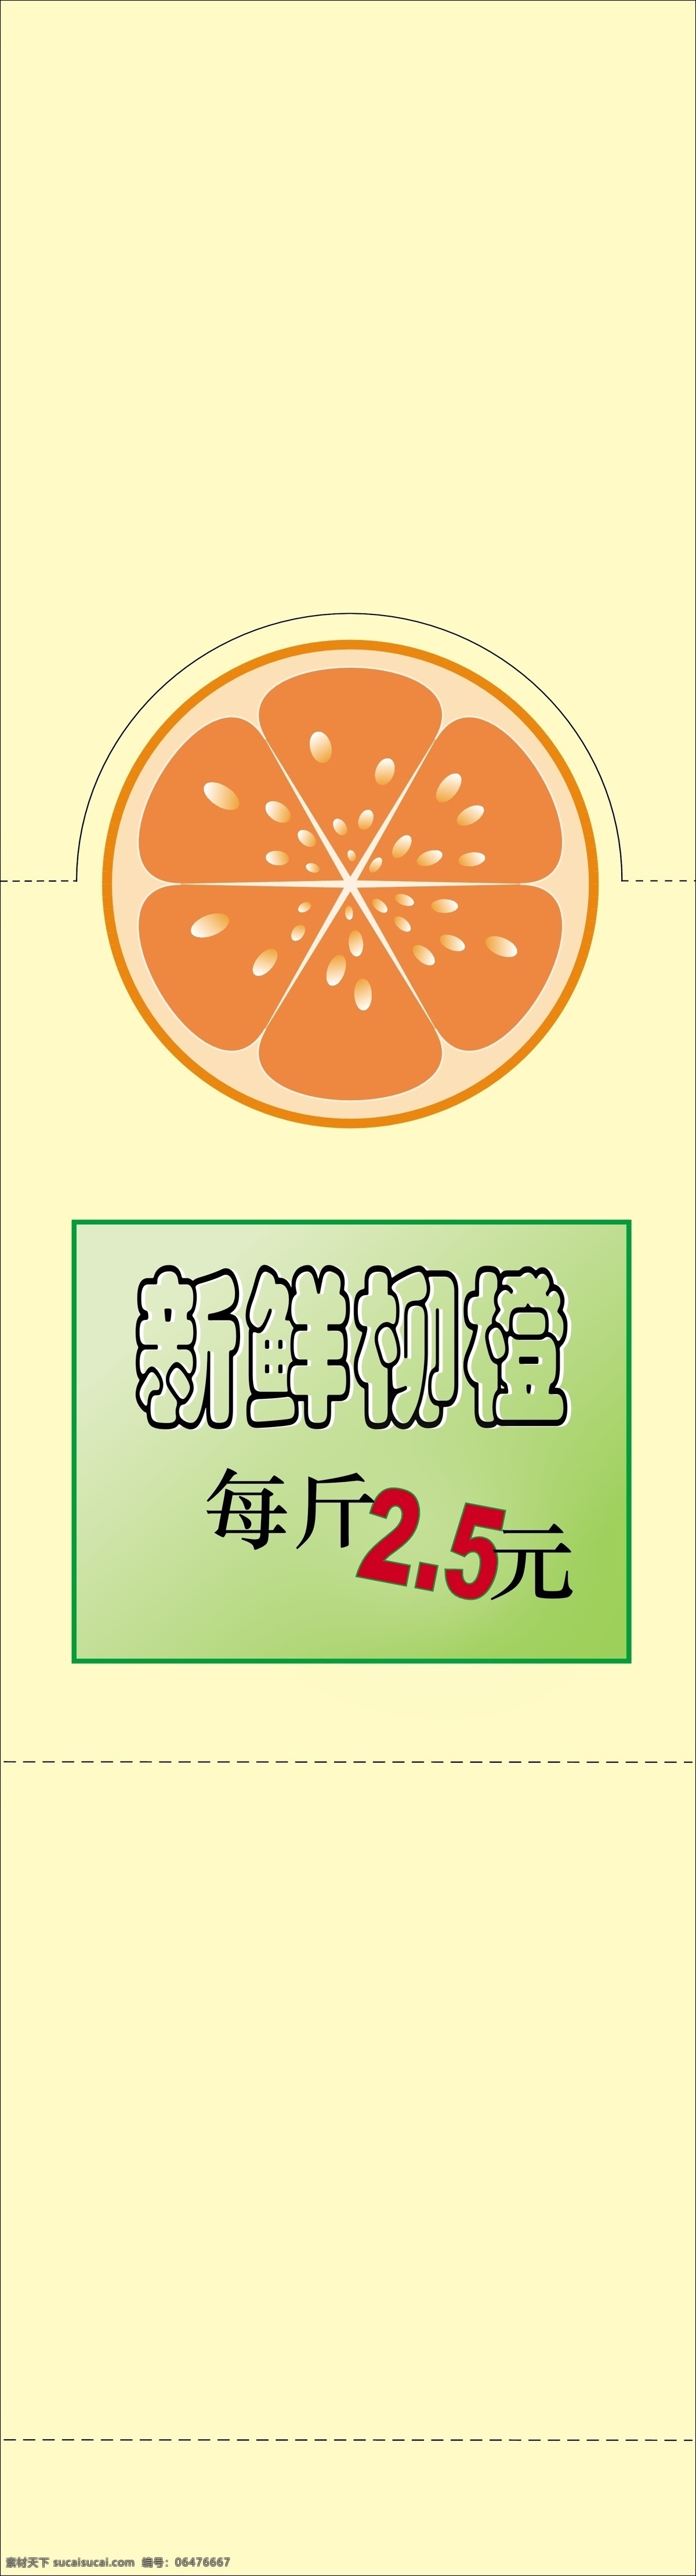 新鲜 柳橙 橙子 柳橙汁 清新 水果 饮料 源文件 展板模板 新鲜柳橙 矢量 其他展板设计